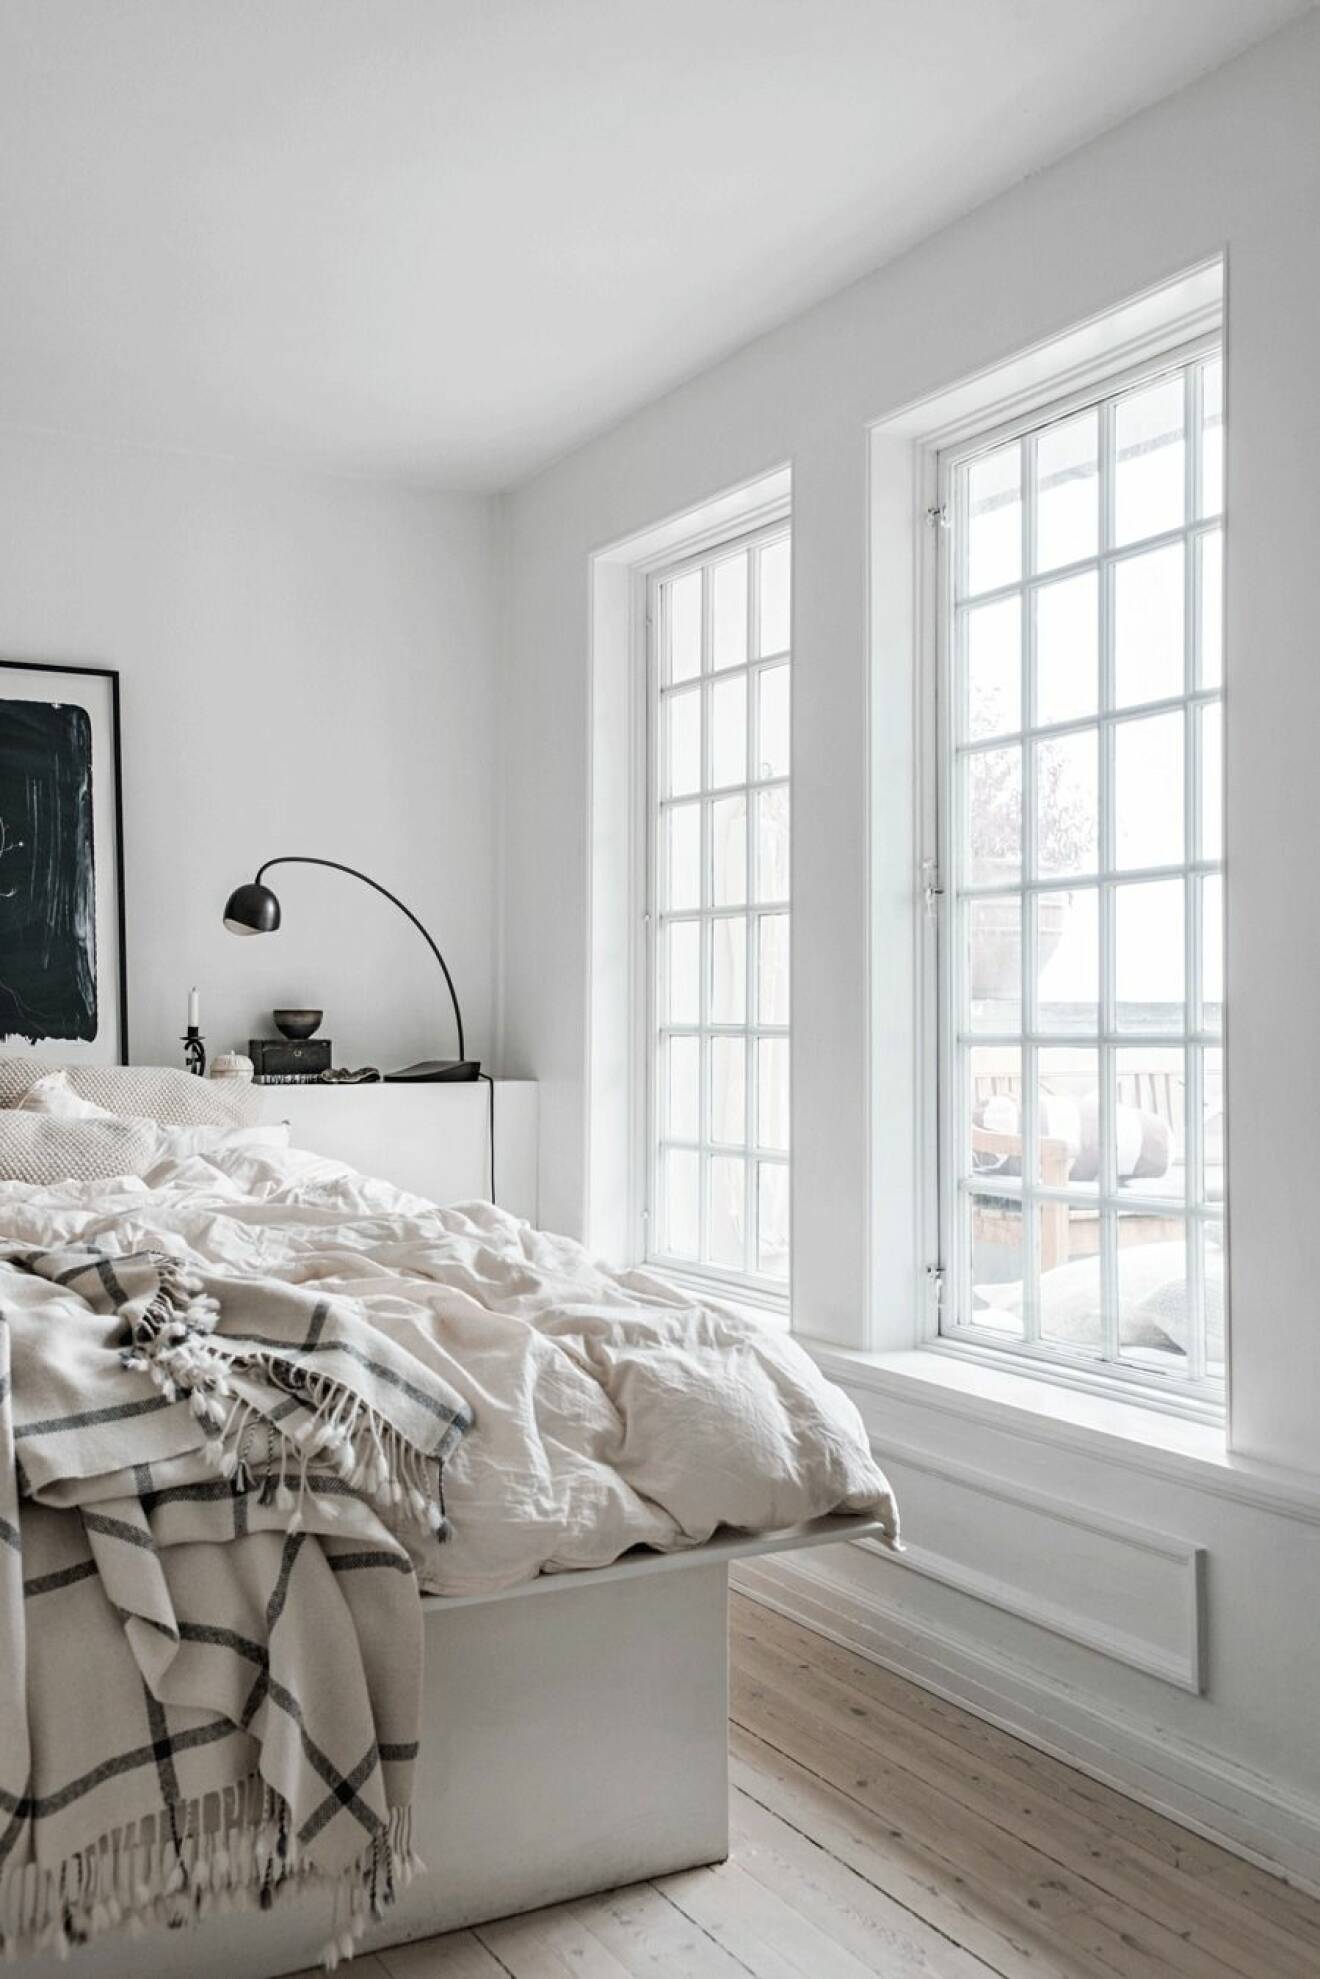 Sovrum med ljus, vit interiör